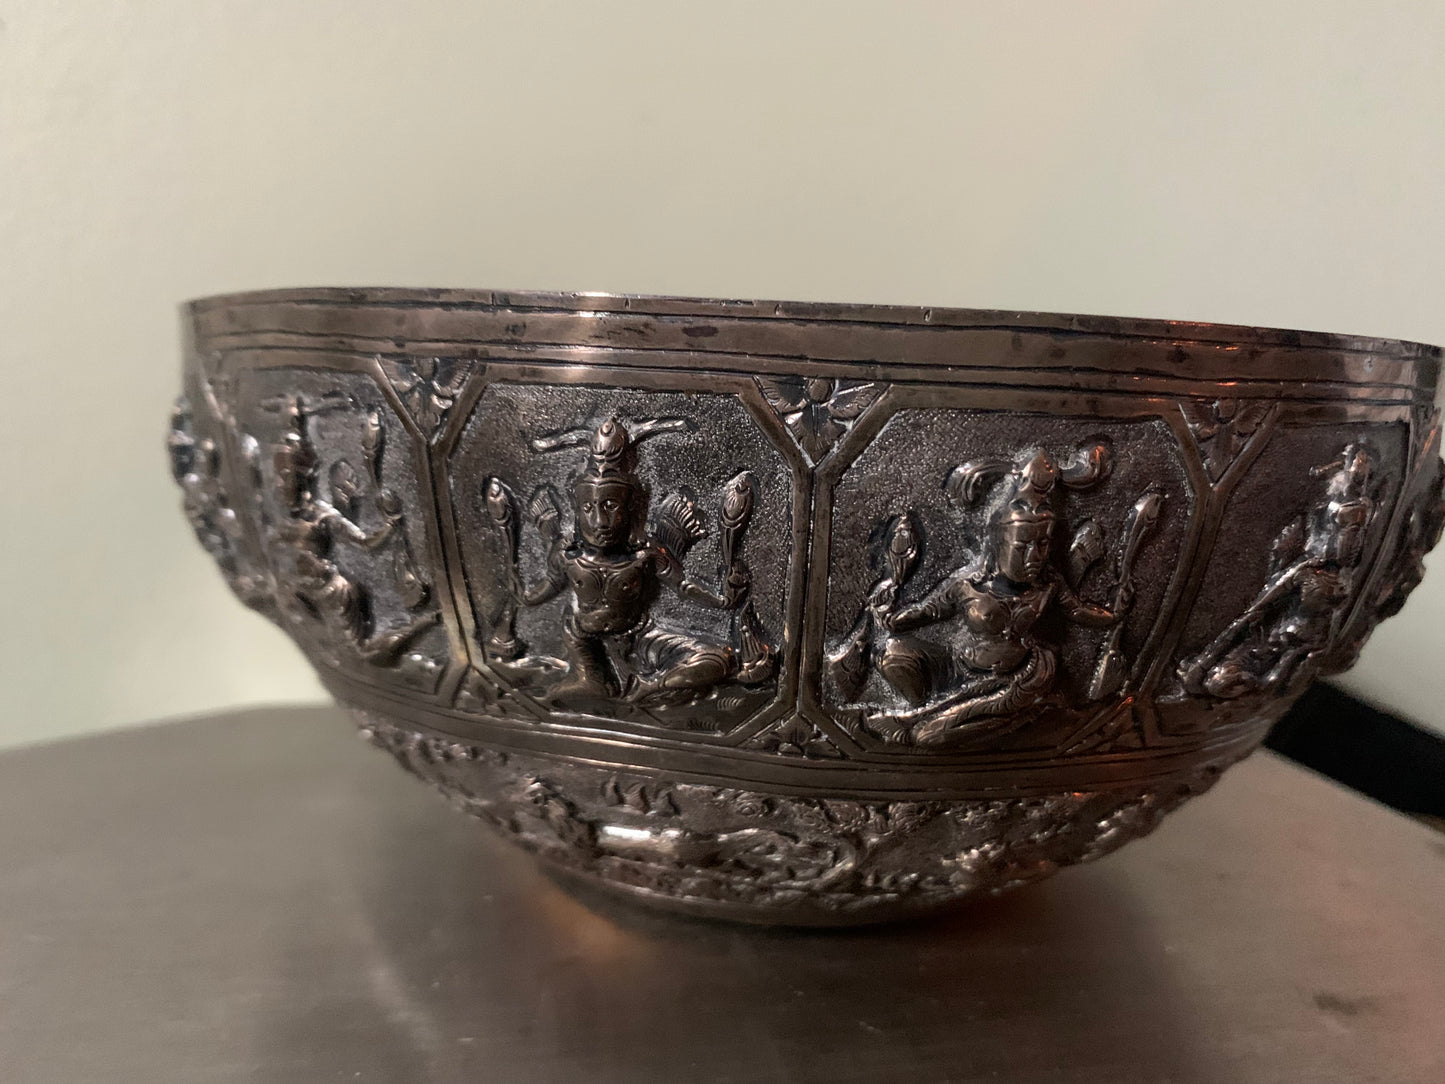 A silver repousse bowl